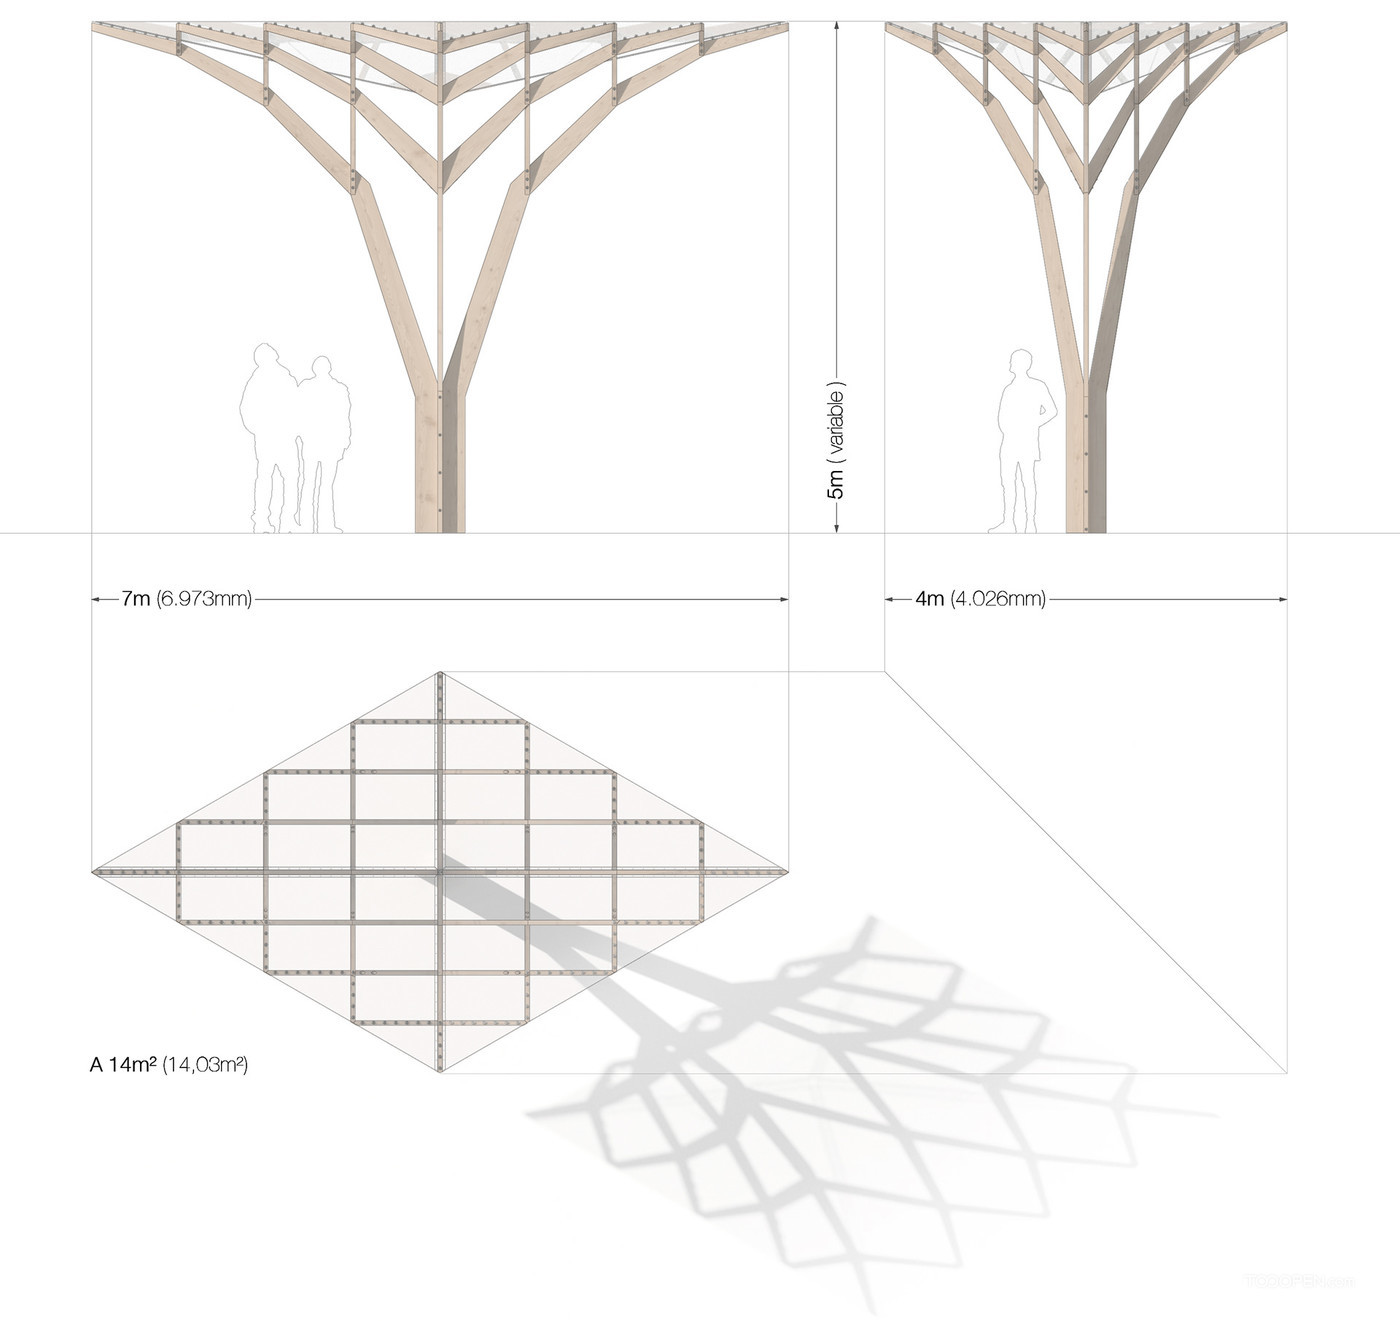 木结构公共凉亭展示设计图片-02